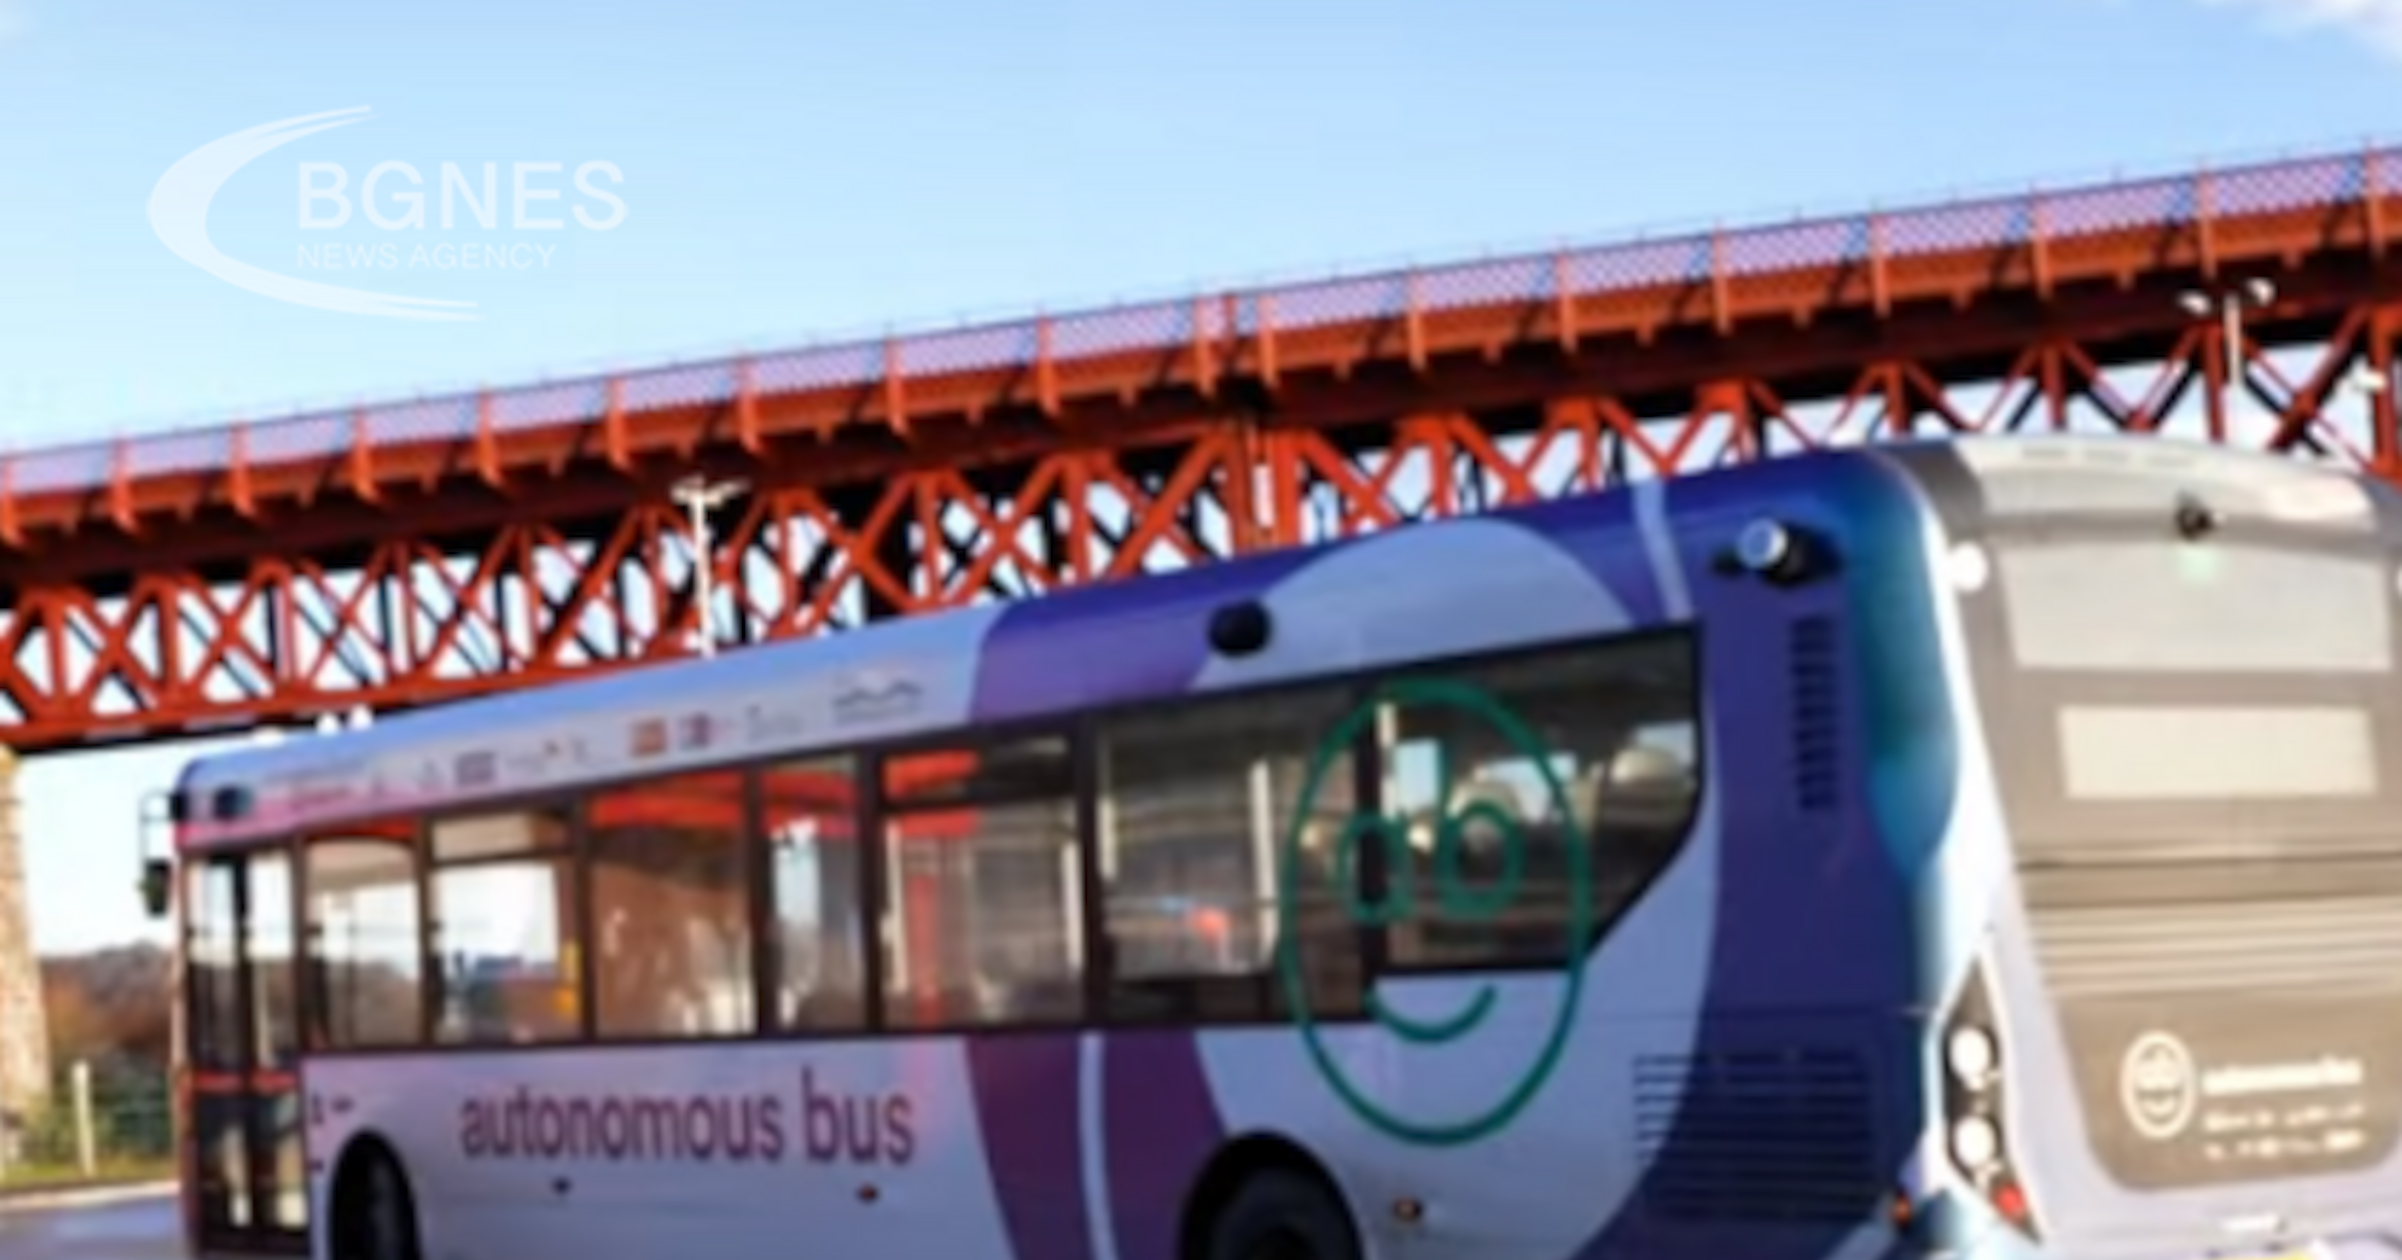 Във Великобритания бе представен на обществеността първият автономен автобус, който